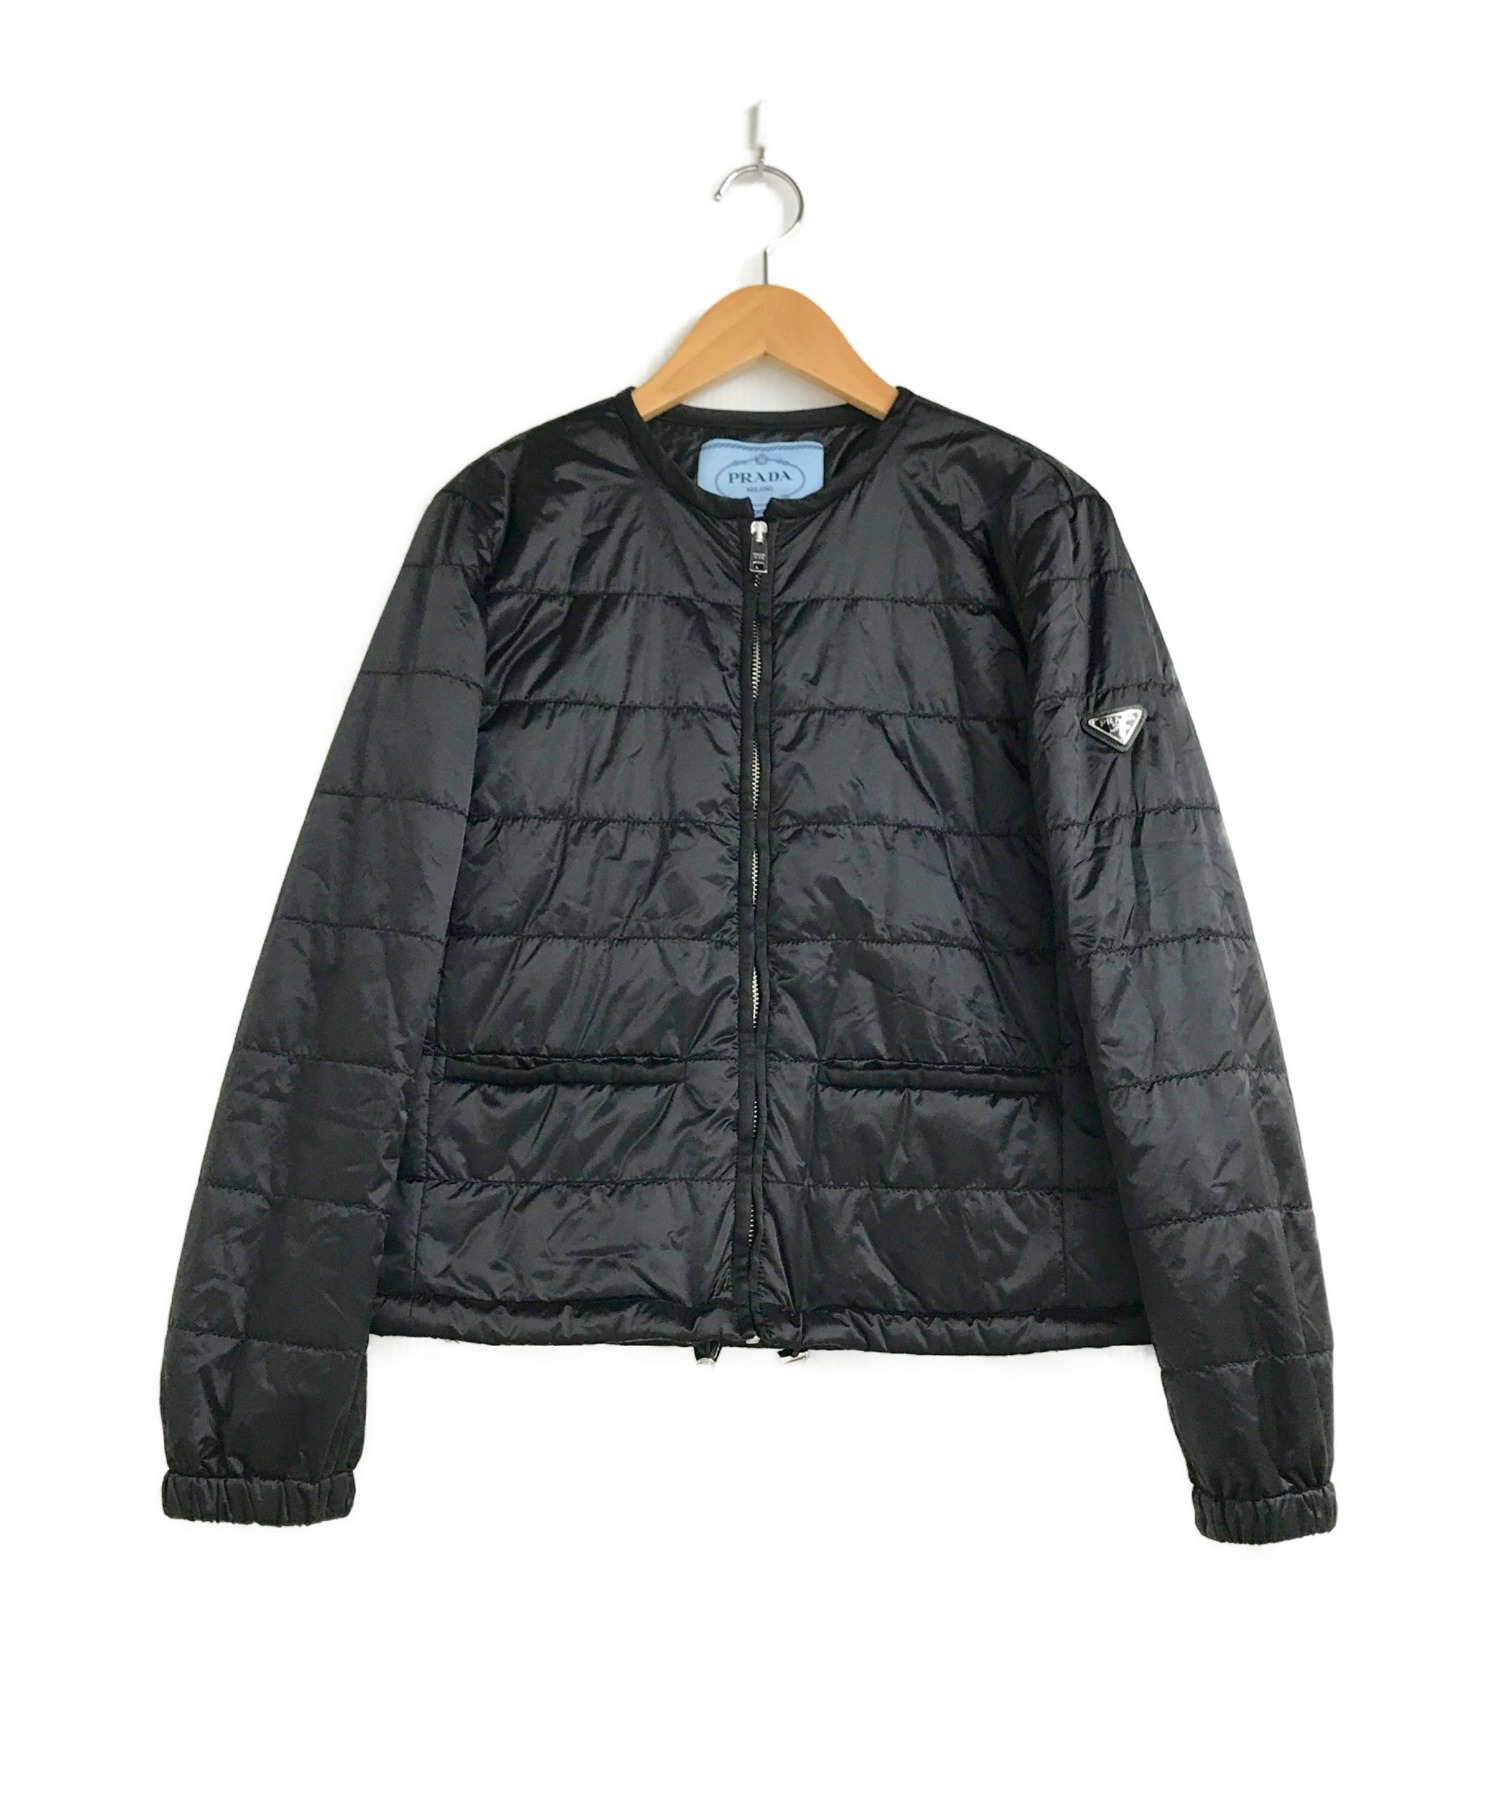 PRADA (プラダ) 中綿キルティングノーカラージャケット ブラック サイズ:40 袖プレートロゴ